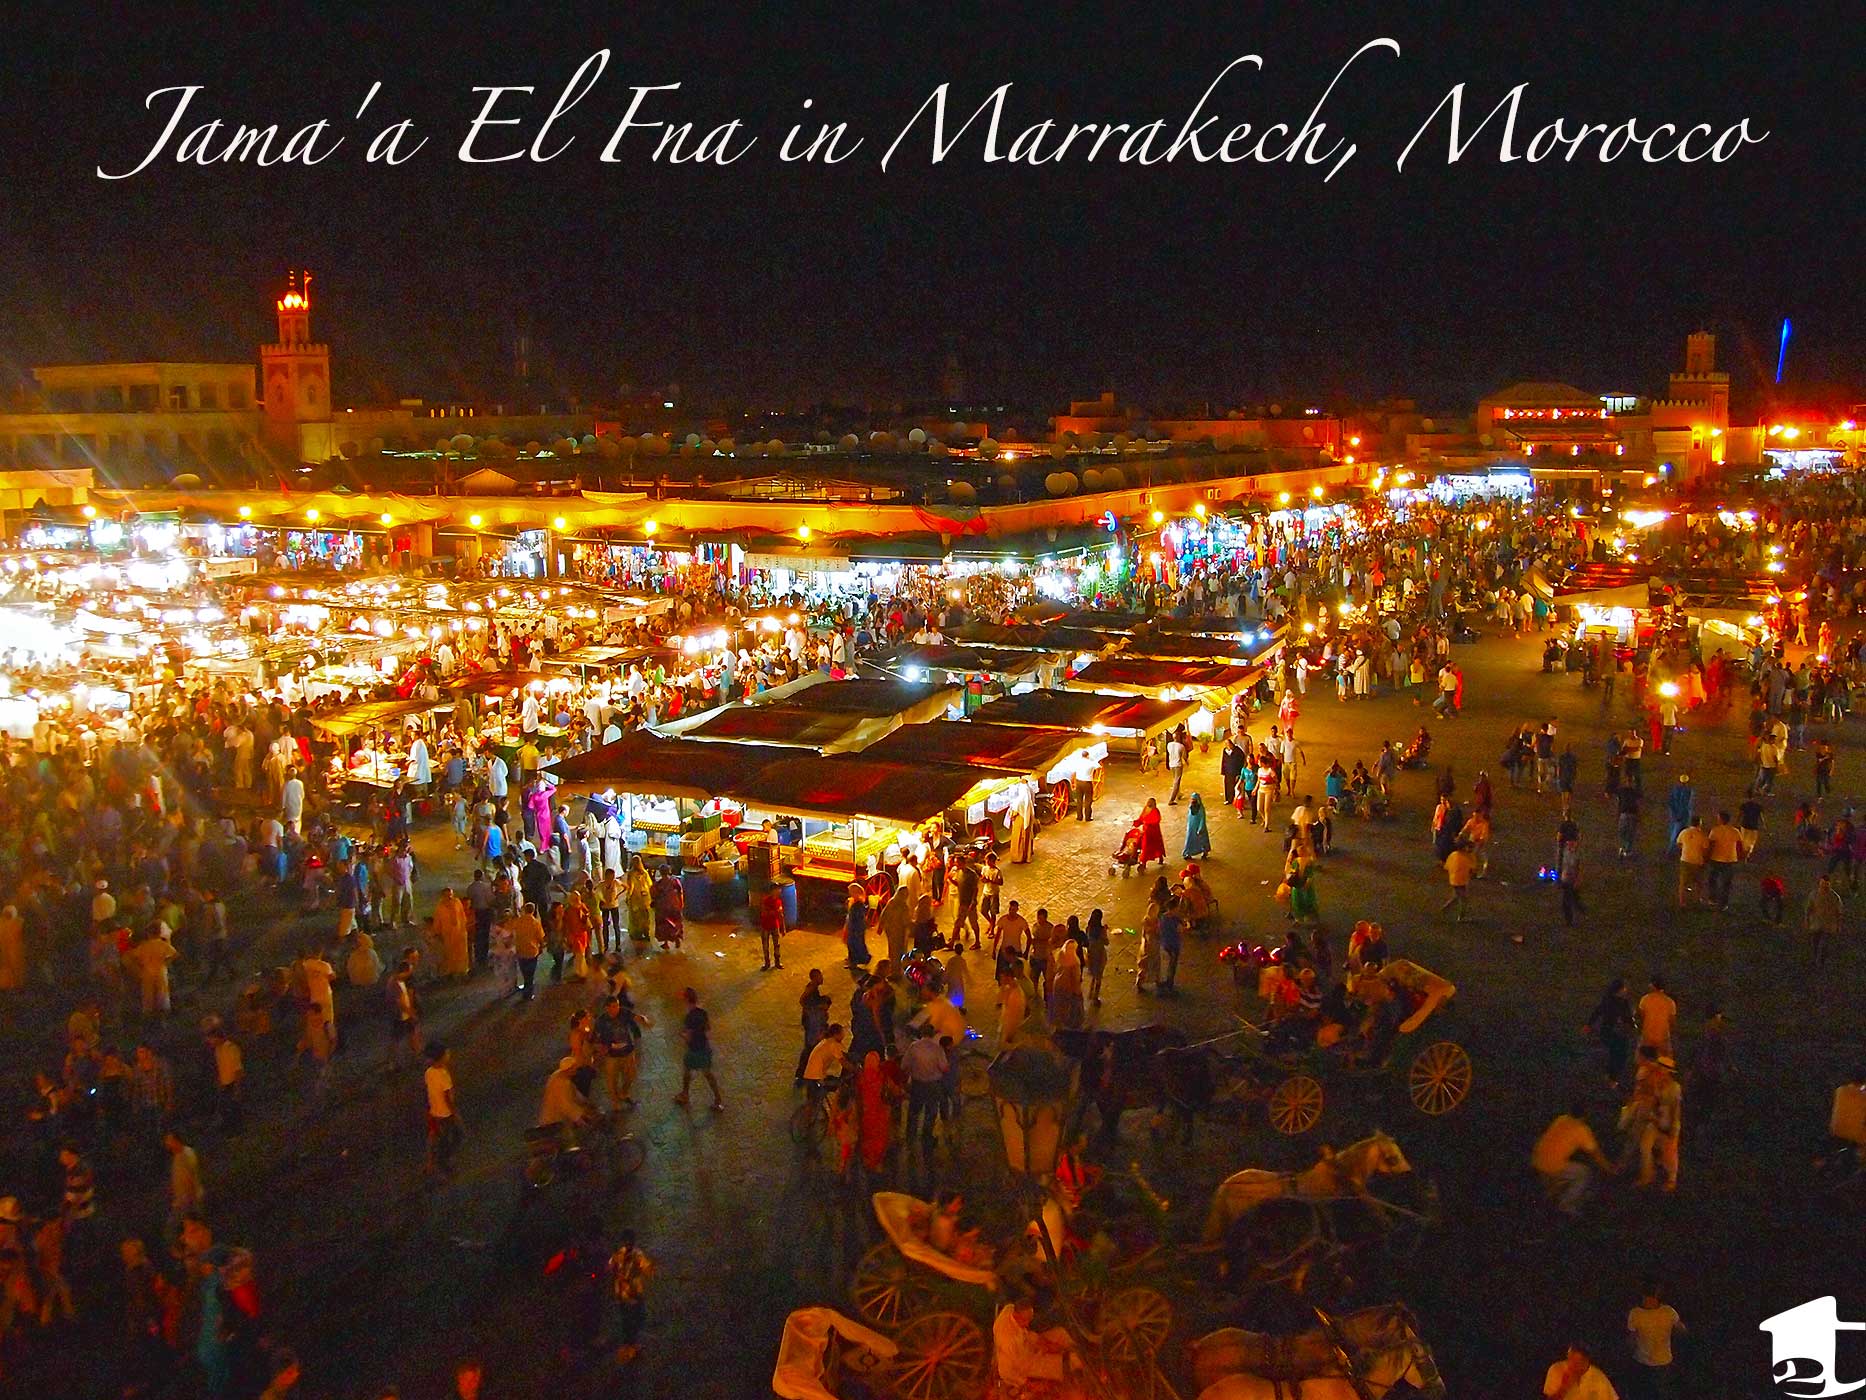 Jama'a el Fna in Marrakech, Morocco